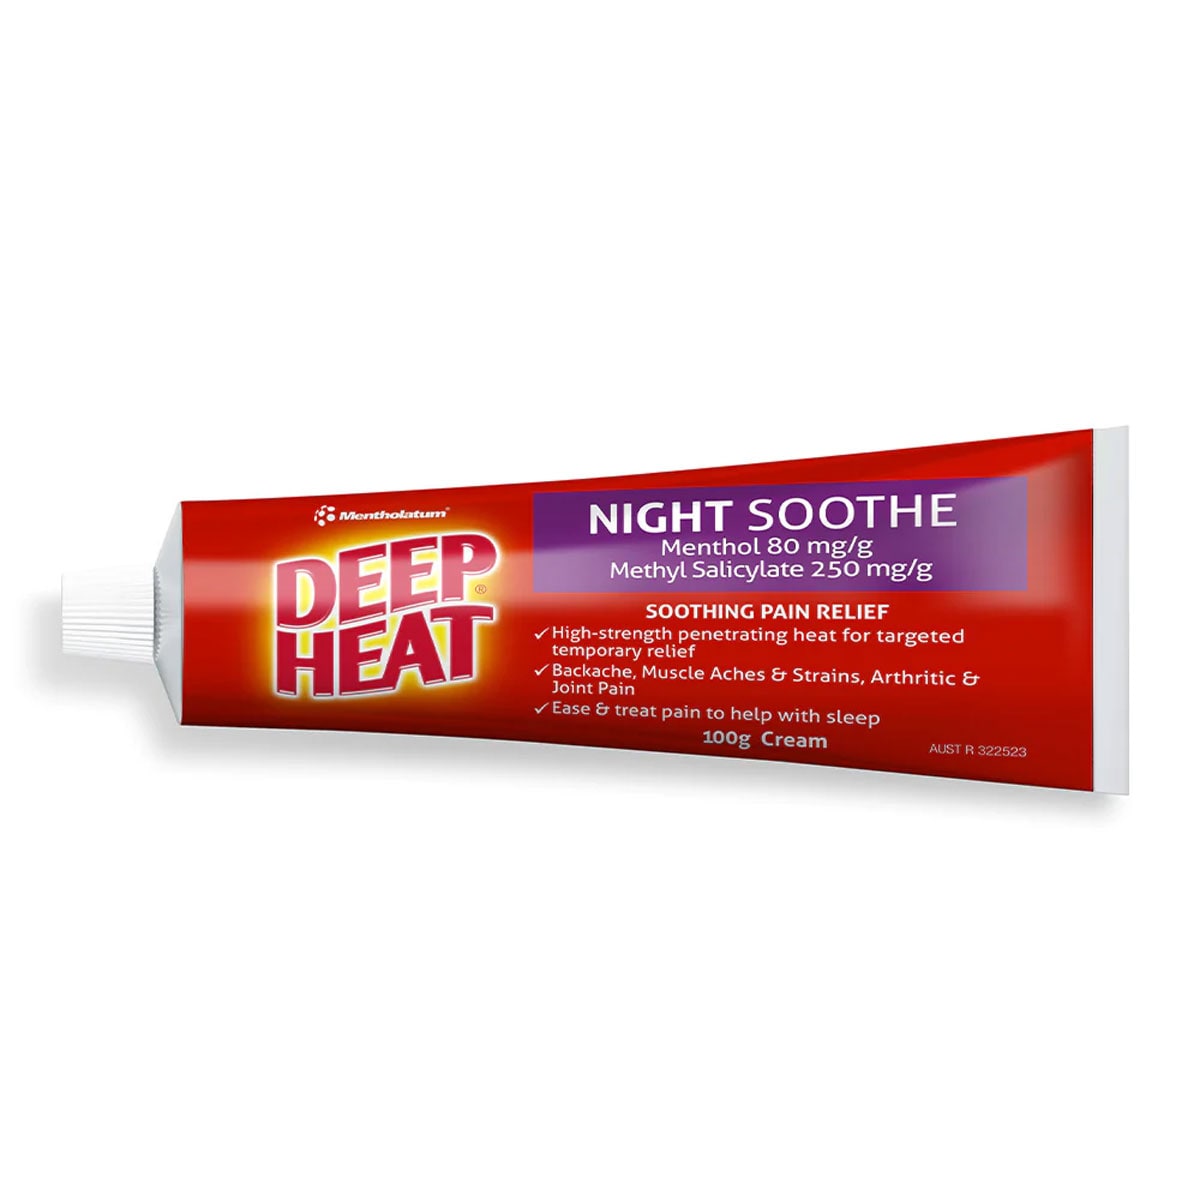 Deep Heat Night Soothe Pain Relief Cream 100g